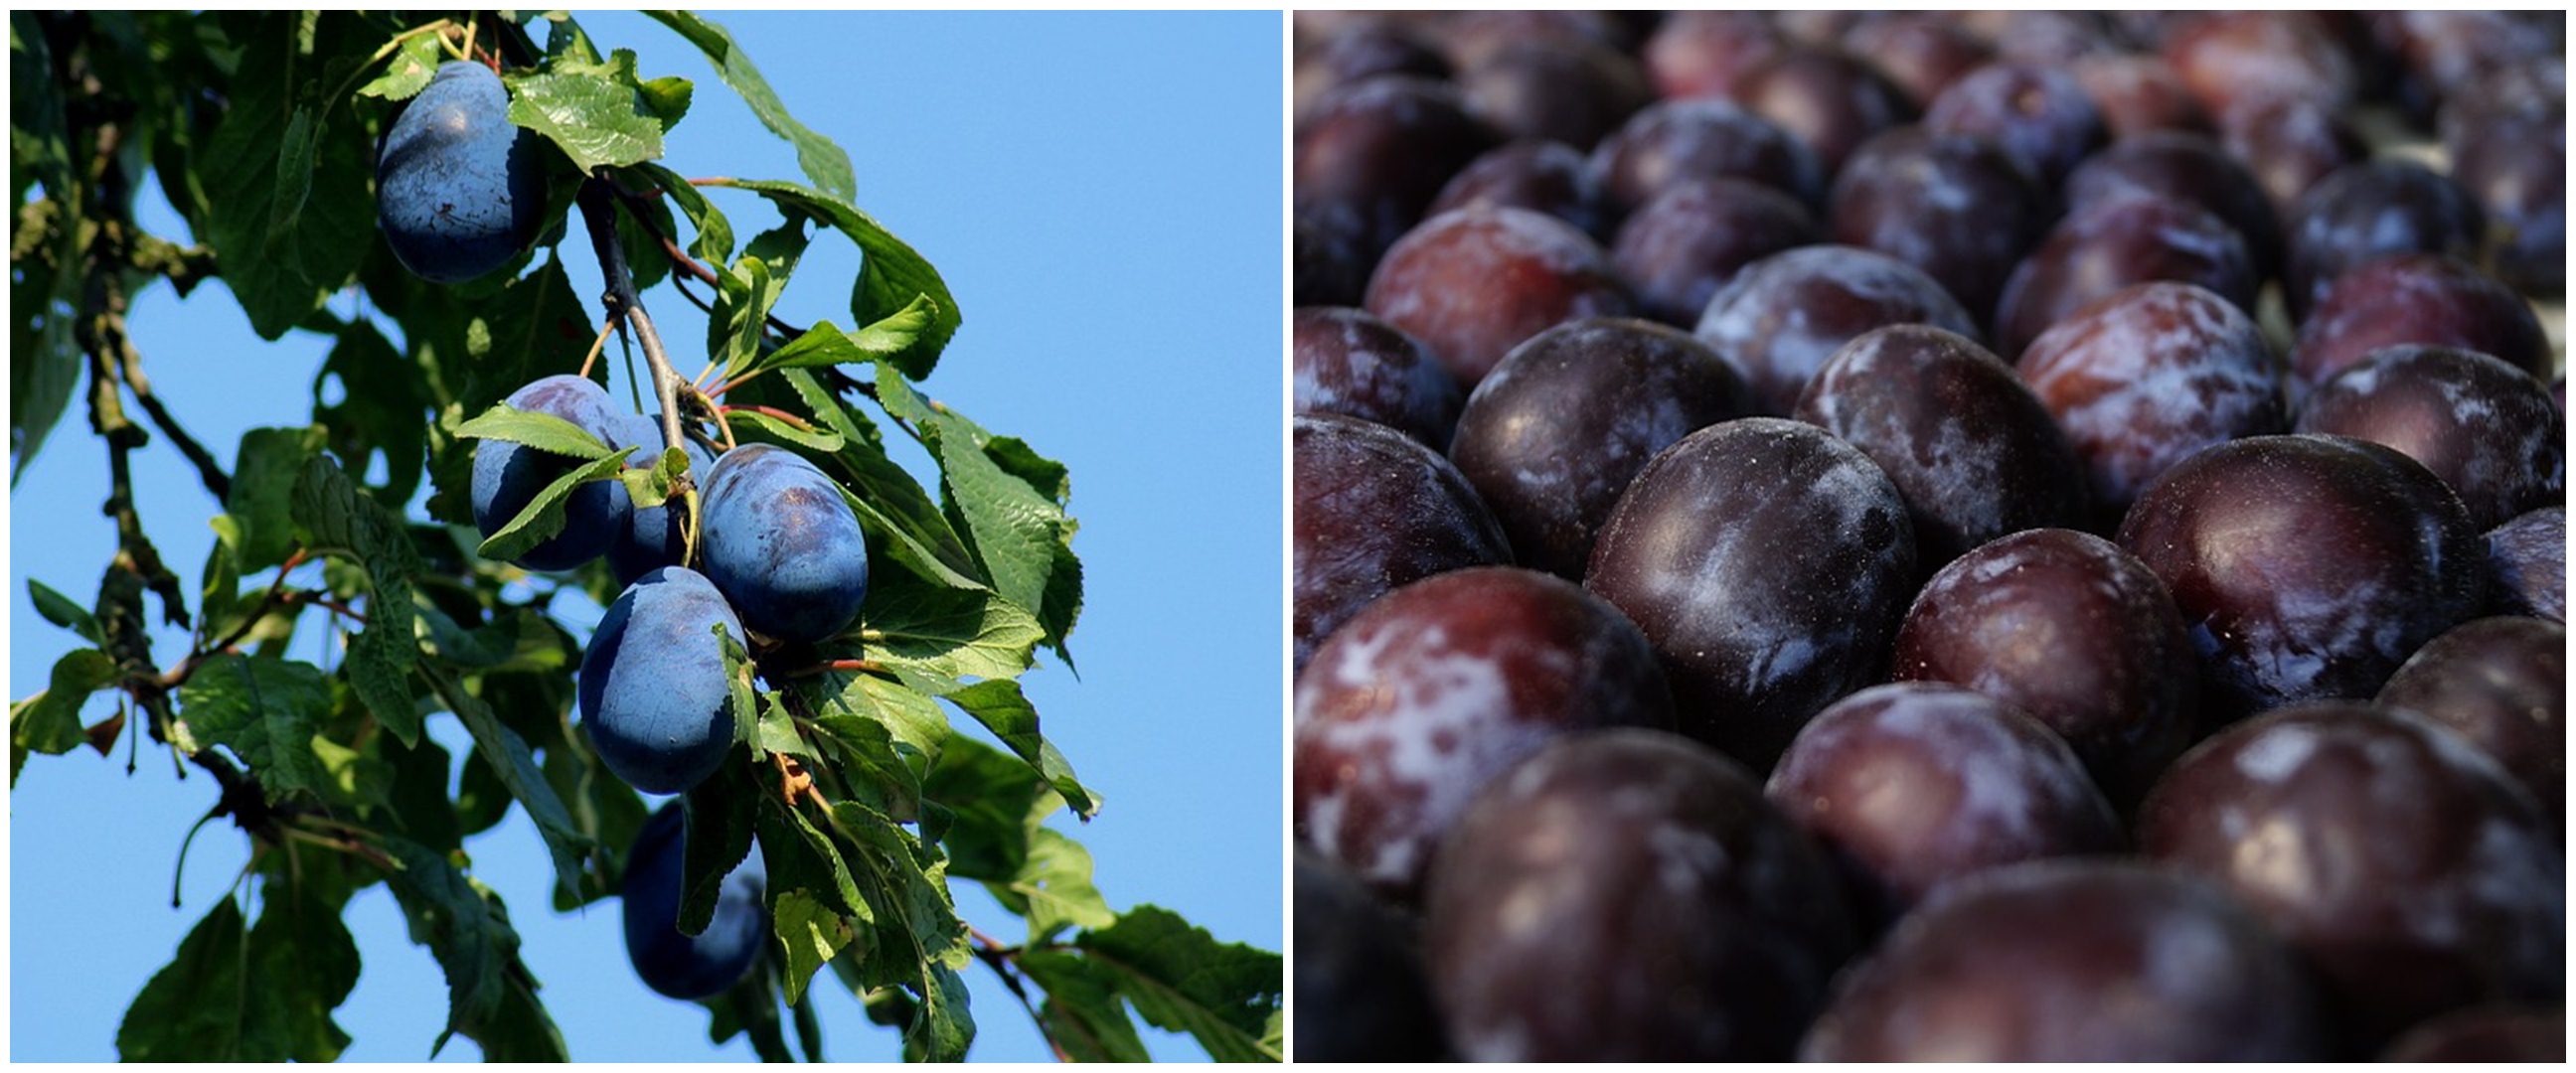 21 Manfaat buah plum untuk kesehatan dan kecantikan, bantu atasi sembelit